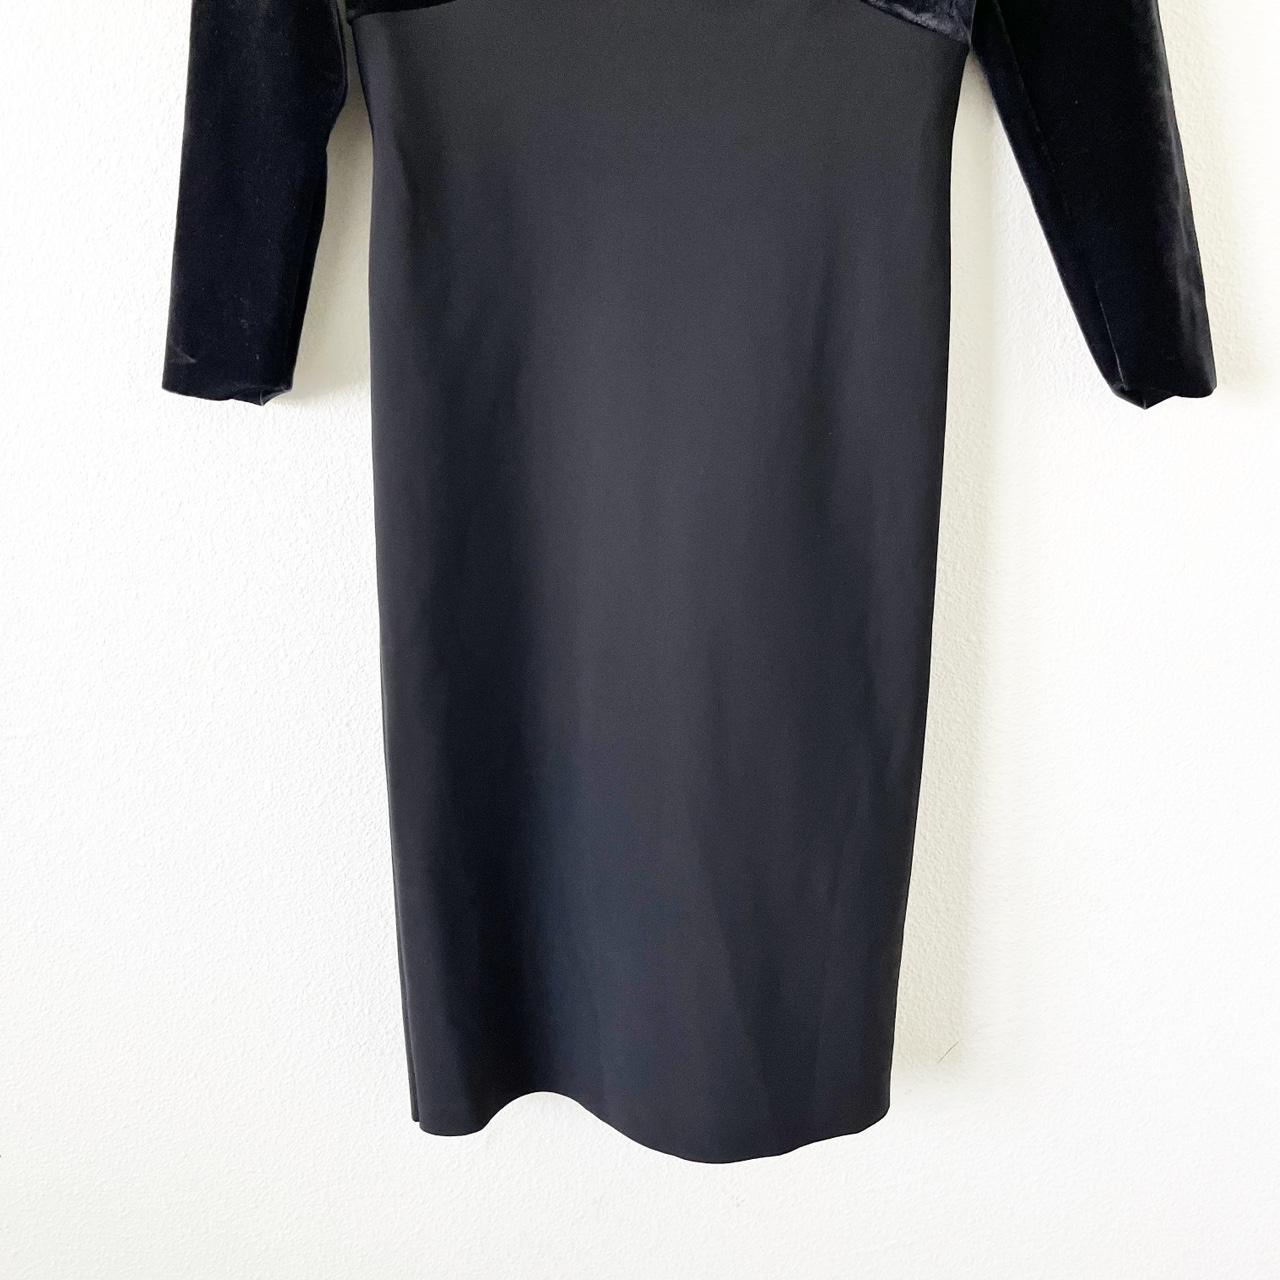 Chiara Boni La Petite Robe Women's Black Dress (5)